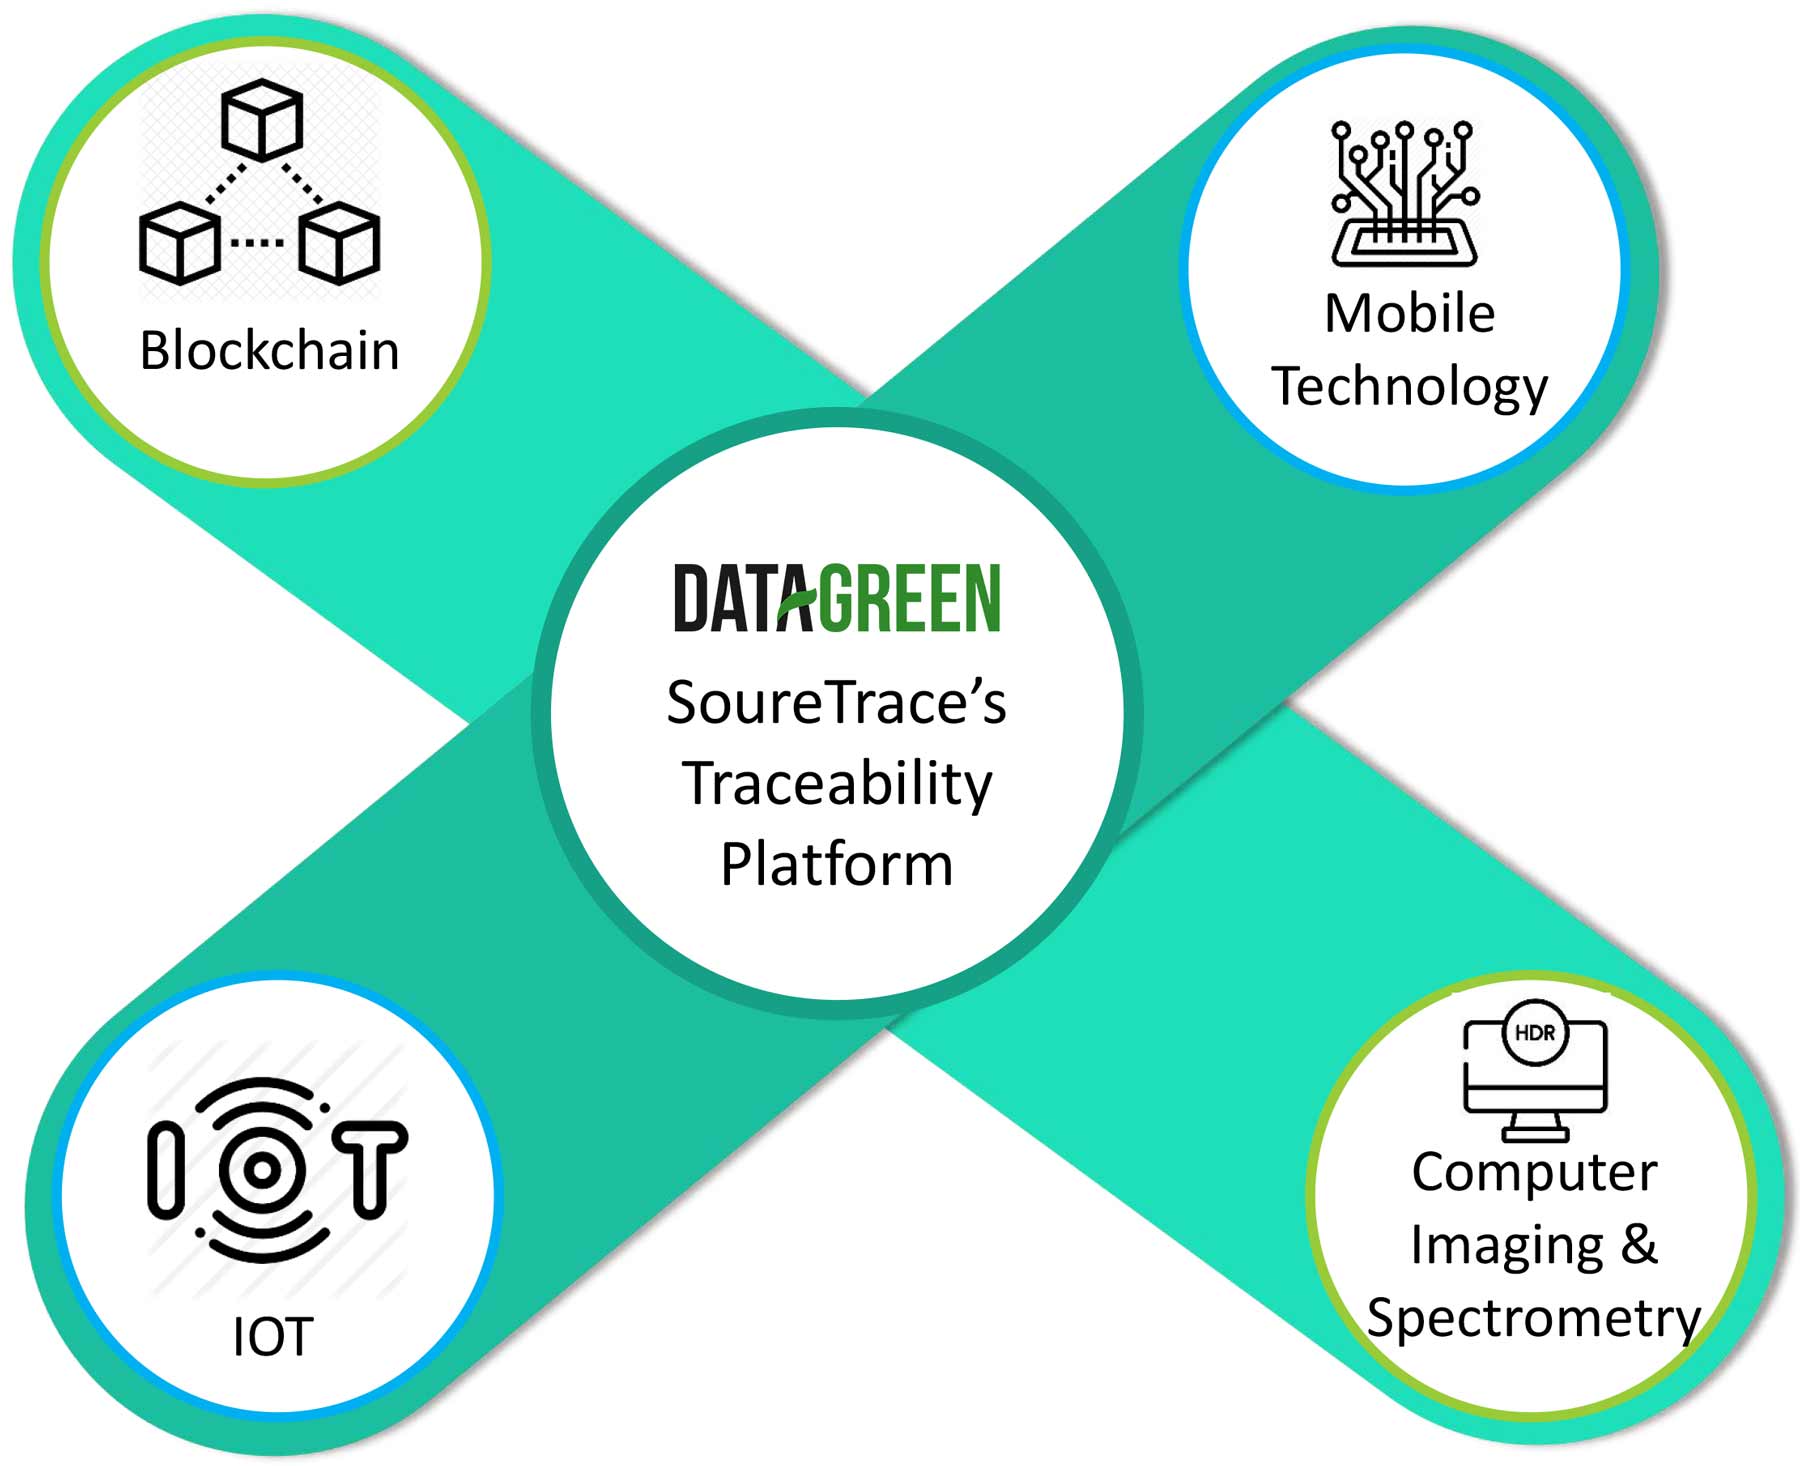 SourceTrace’s Traceability Platform